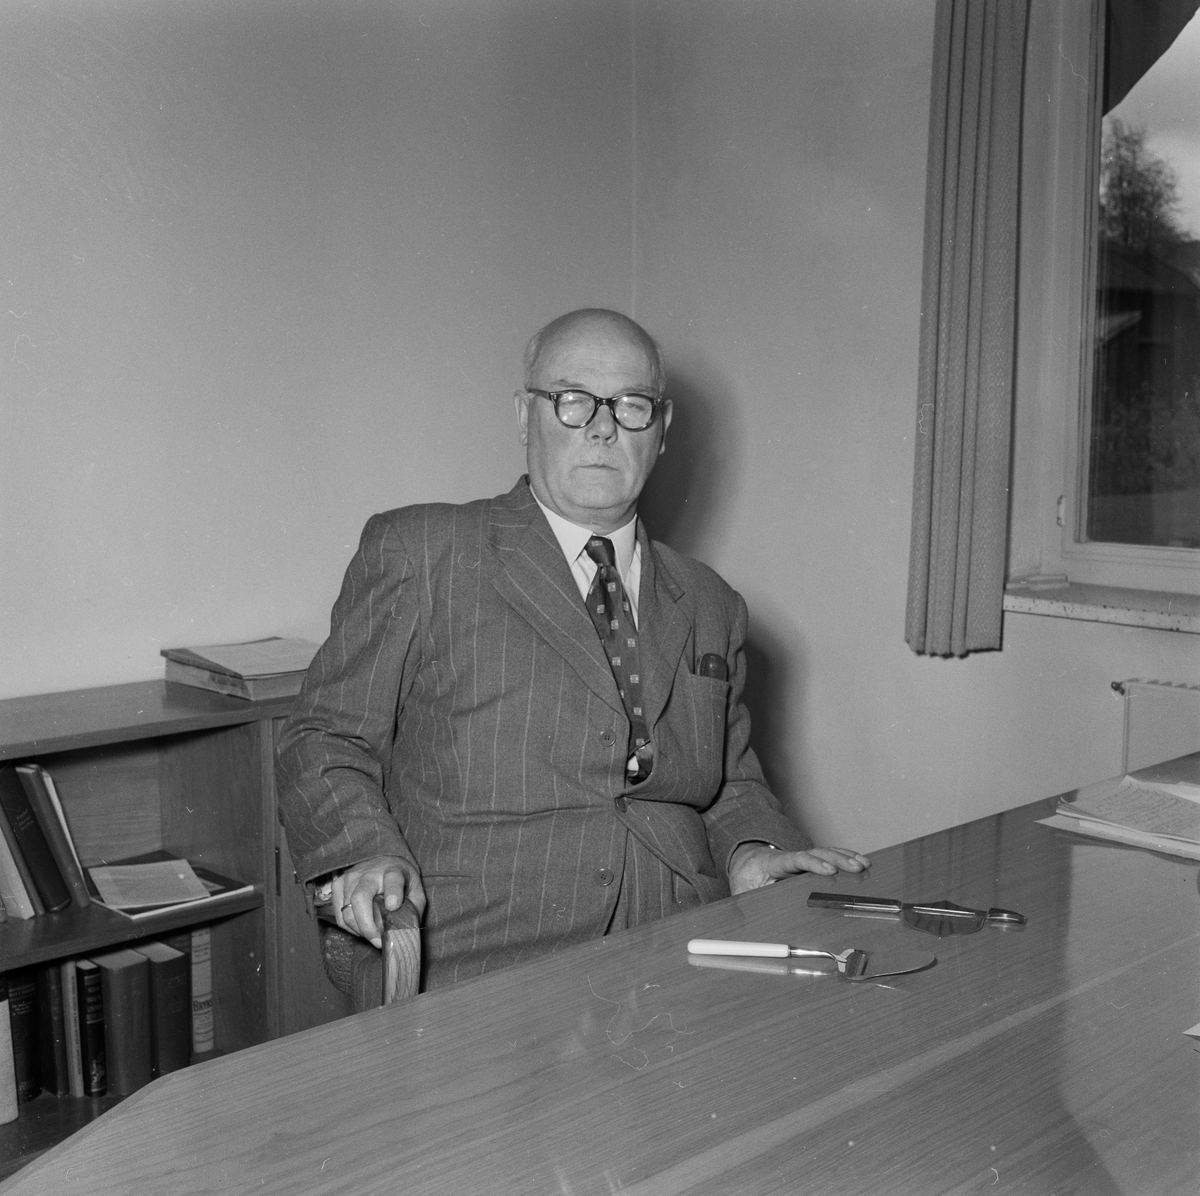 Thor Bjørklund (1889-1975), grunnlegger av Bjørklunds stålvarefabrikk, også kalt "Ostehøvelen", hvor Bjørklunds ostehøvel ble produsert